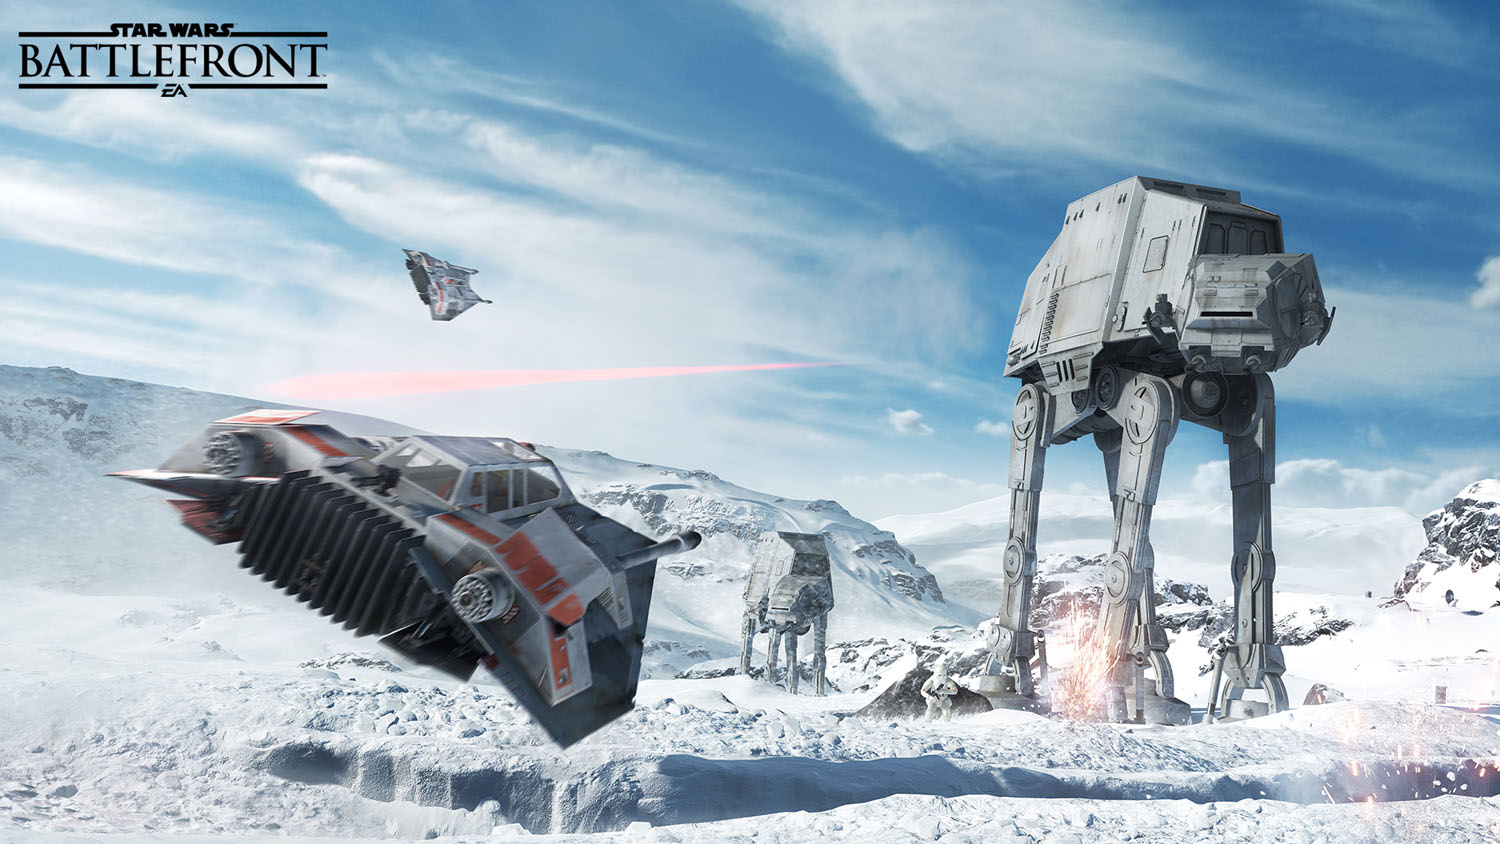 40人でホスの雪原で戦え! 「Star Wars バトルフロント」レポート - GAME Watch